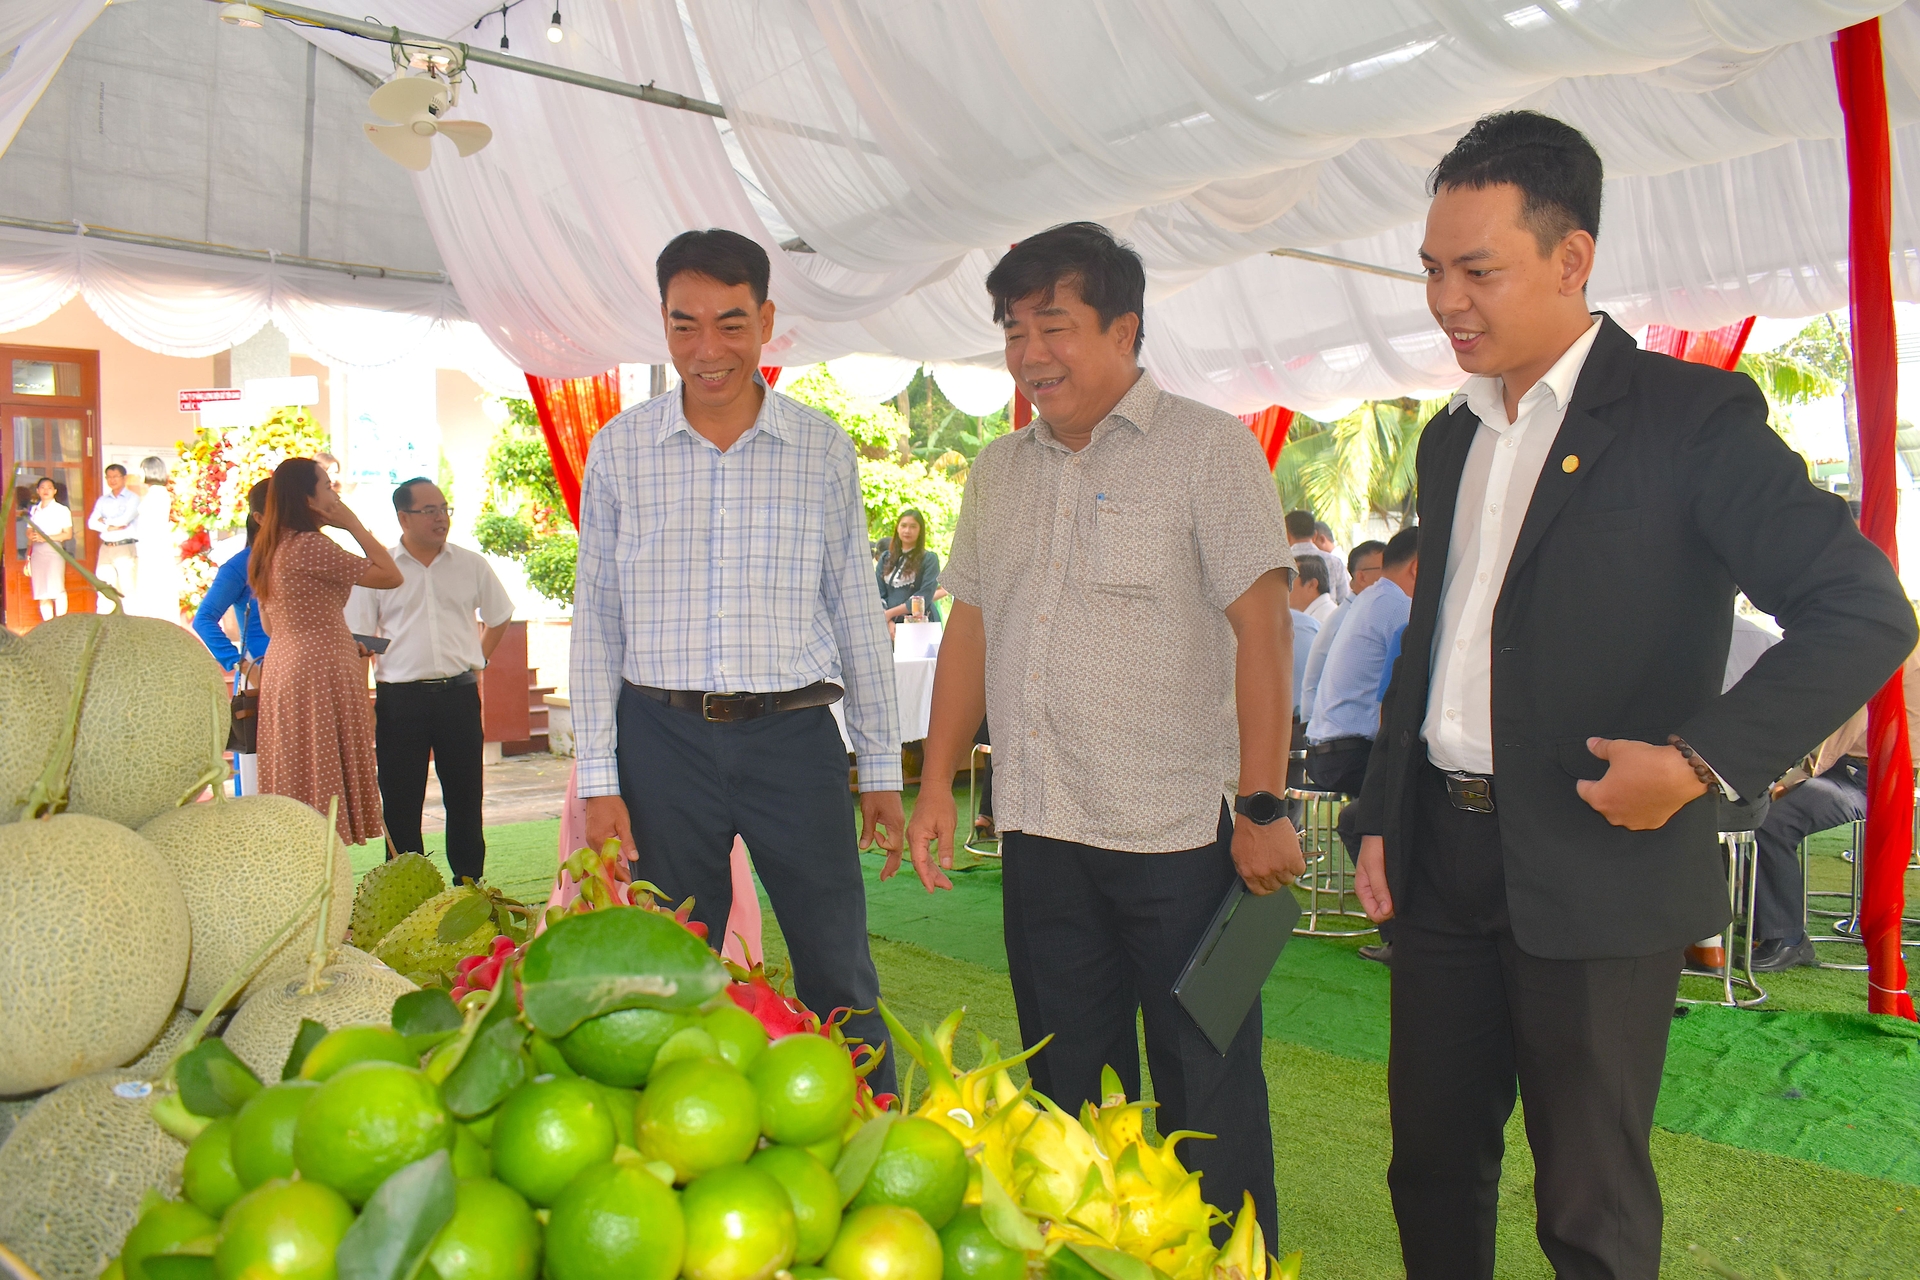 Ông Đoàn Văn Tuấn, Bí thư Huyện ủy Tân Phước giới thiệu các mặt hàng nông sản của huyện với các đại biểu. Ảnh: Minh Đảm.